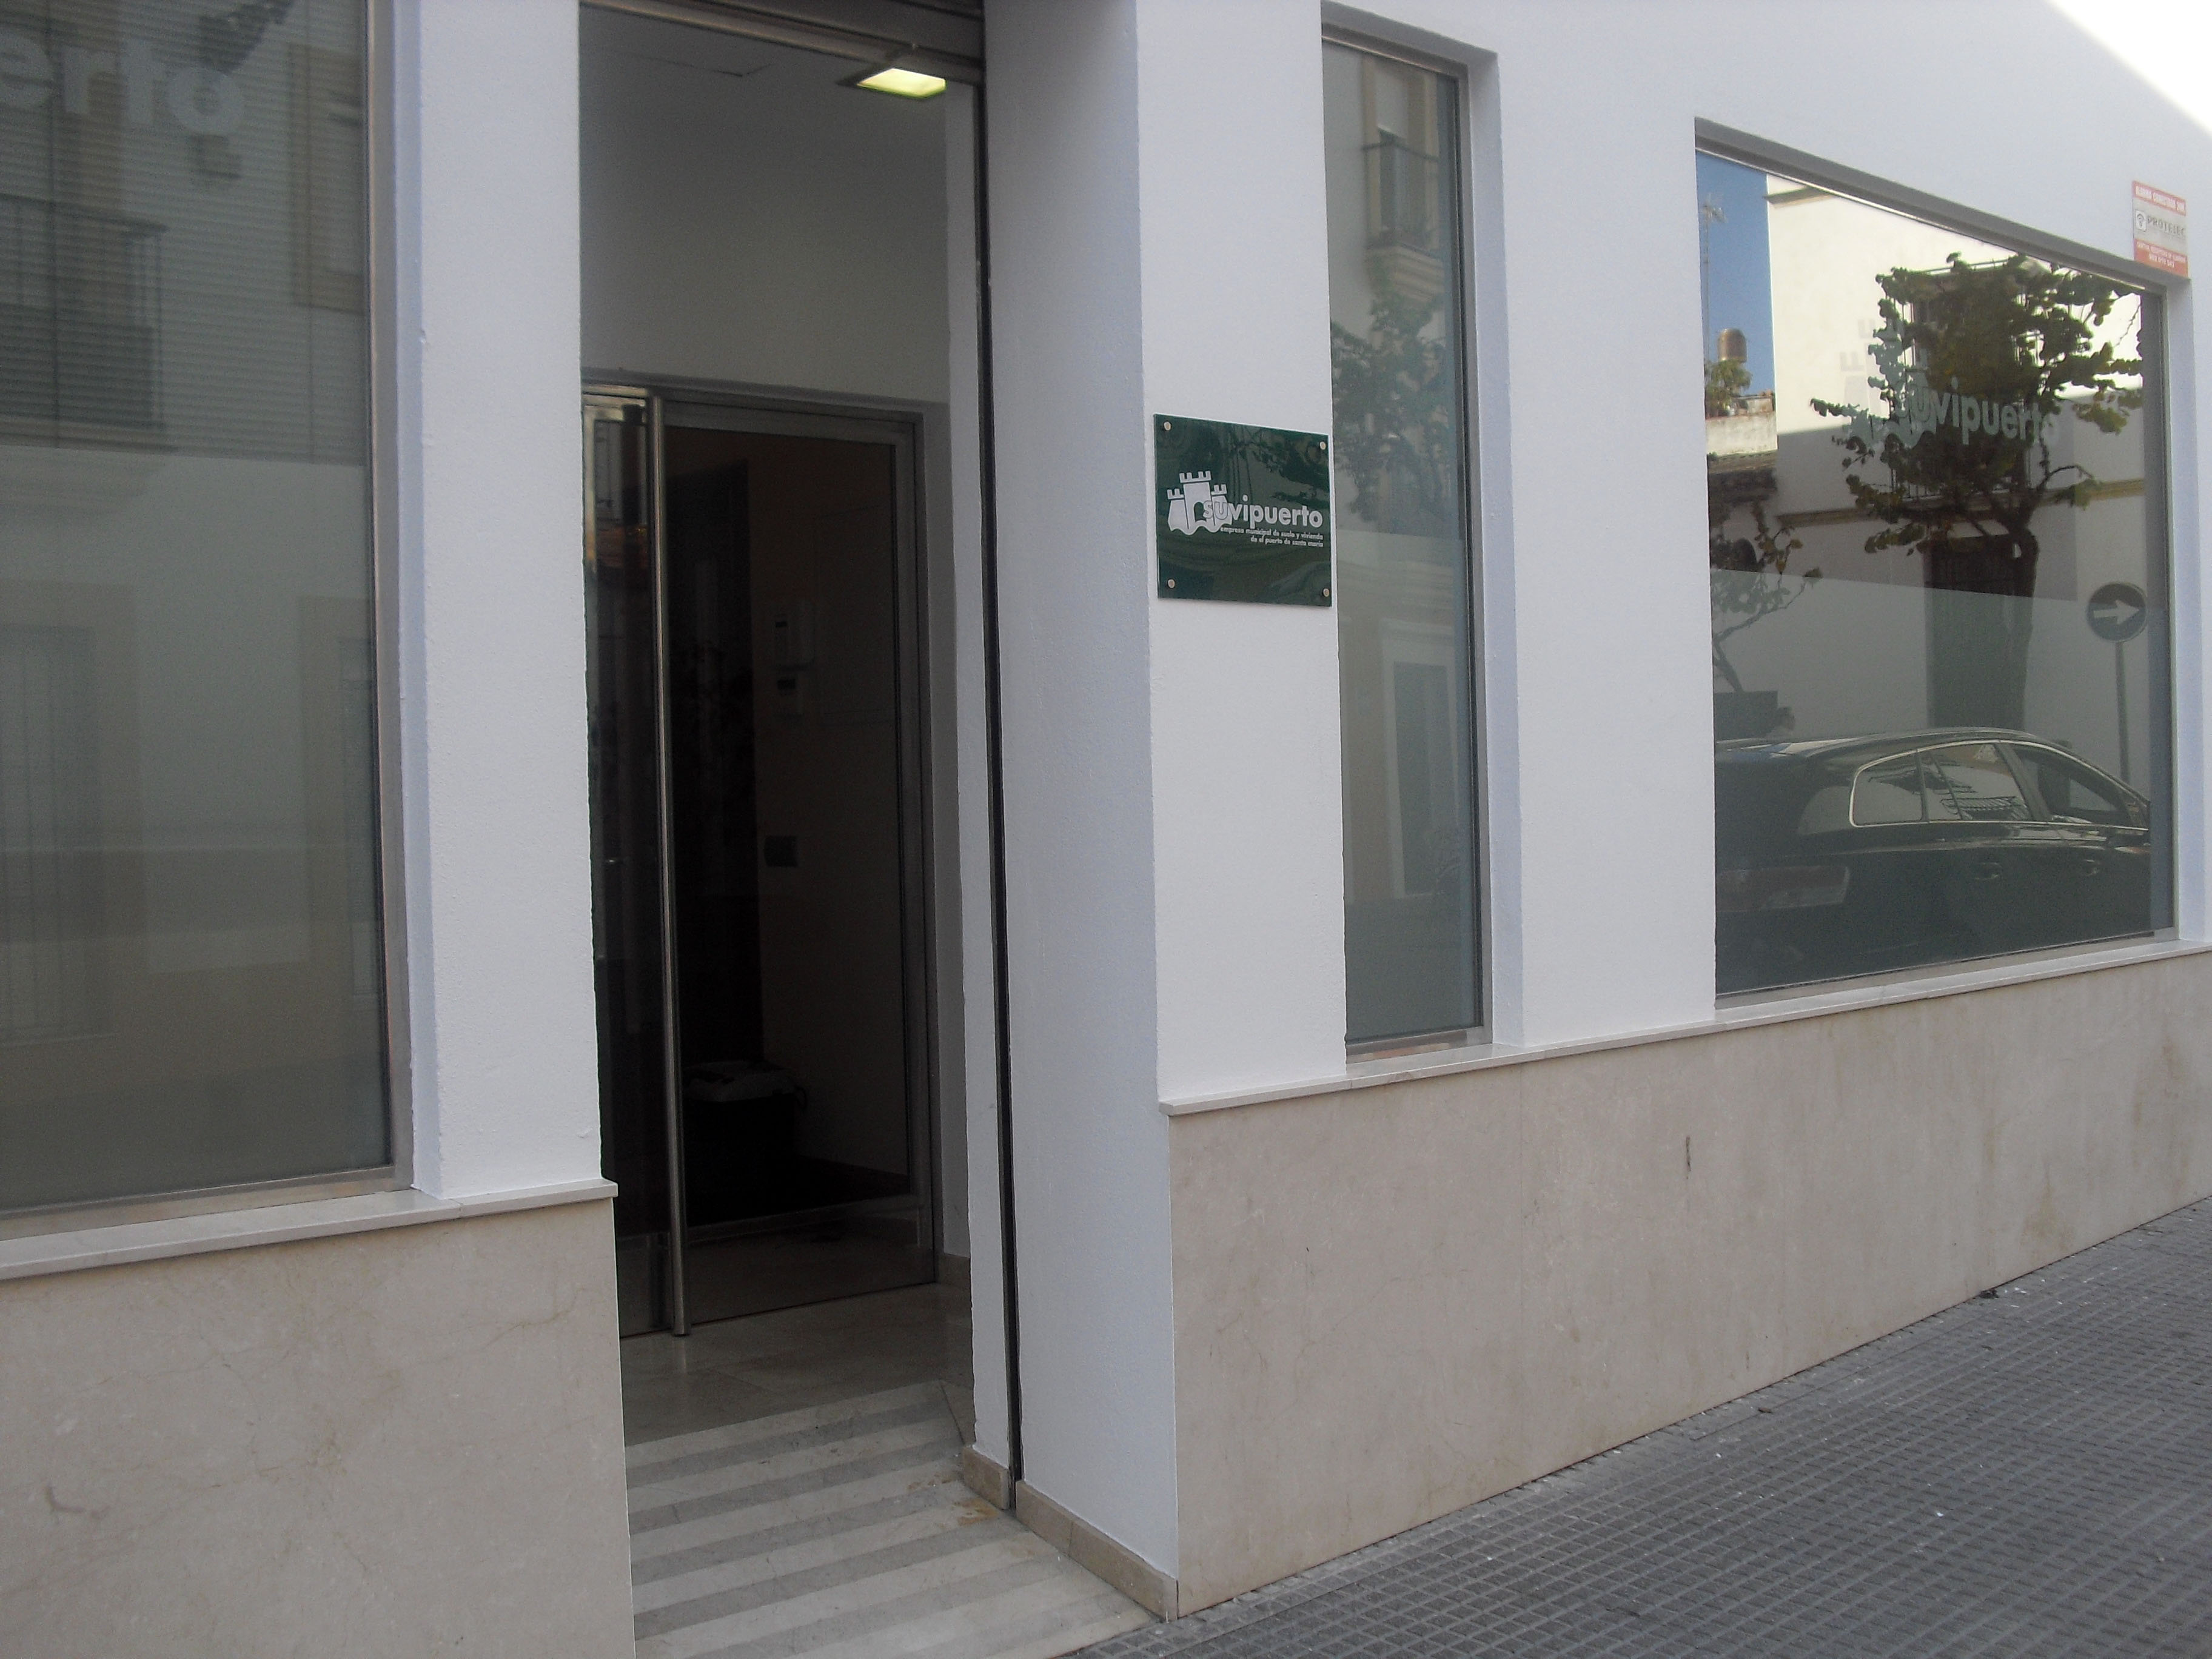 Suvipuerto ofrece información y orientación para solicitar las ayudas al alquiler de la Junta de Andalucía. 